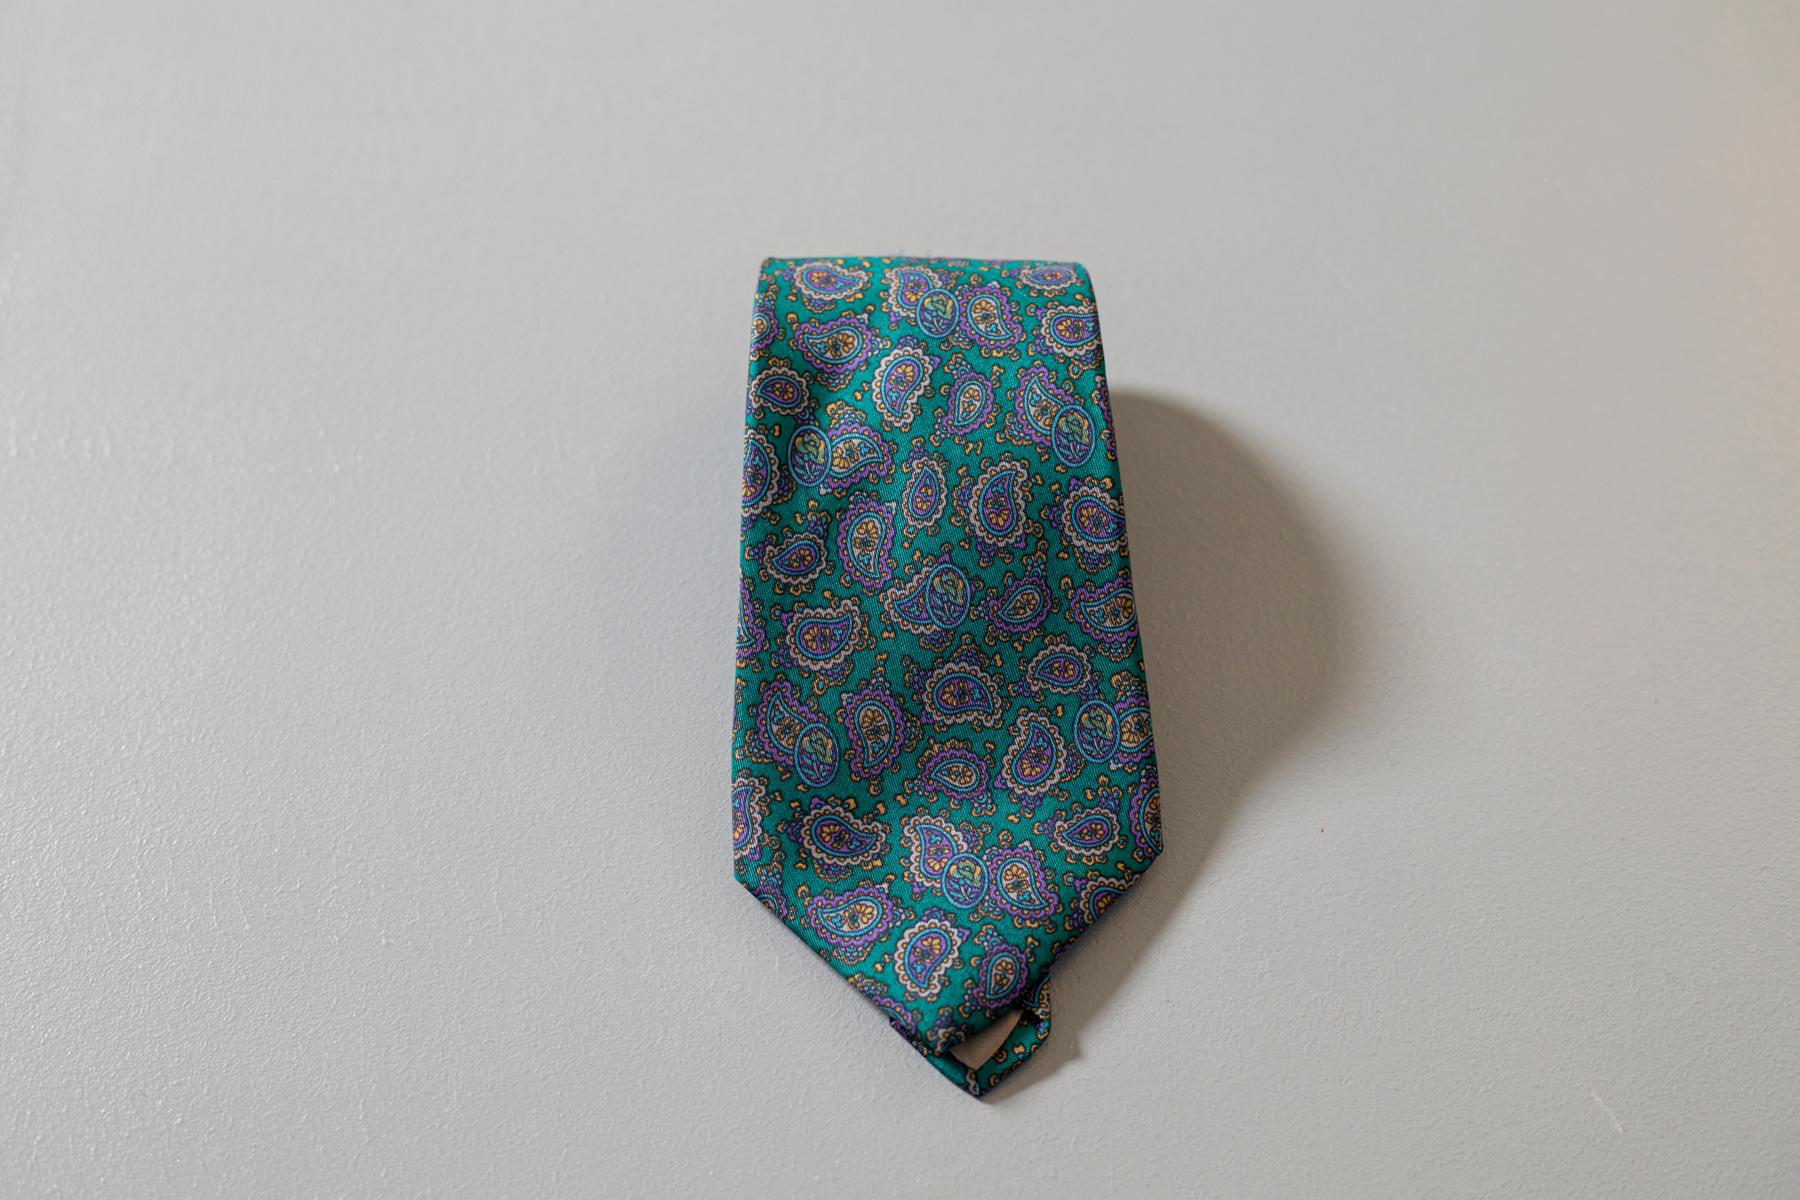 Cravate vintage Pierre Lorrain, elle est réalisée en 100% soie, avec des motifs paisley dans des tons de vert et de violet. Grâce à son motif très particulier, s'il est associé à un costume élégant, il est idéal pour un look raffiné et particulier.